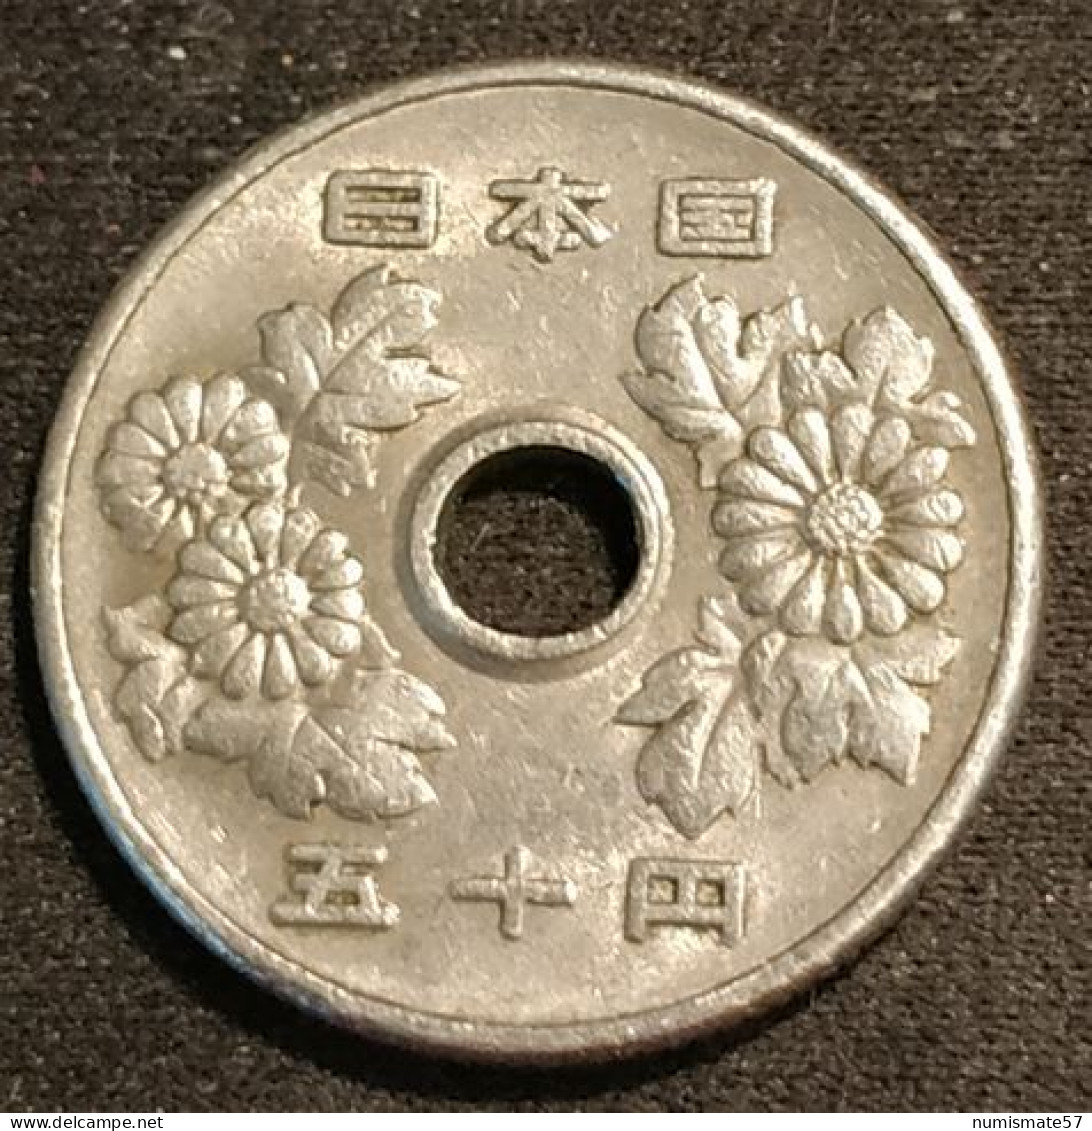 JAPON - JAPAN - 50 YEN 1973 - Shōwa - Year 48 - KM 81 - Japon